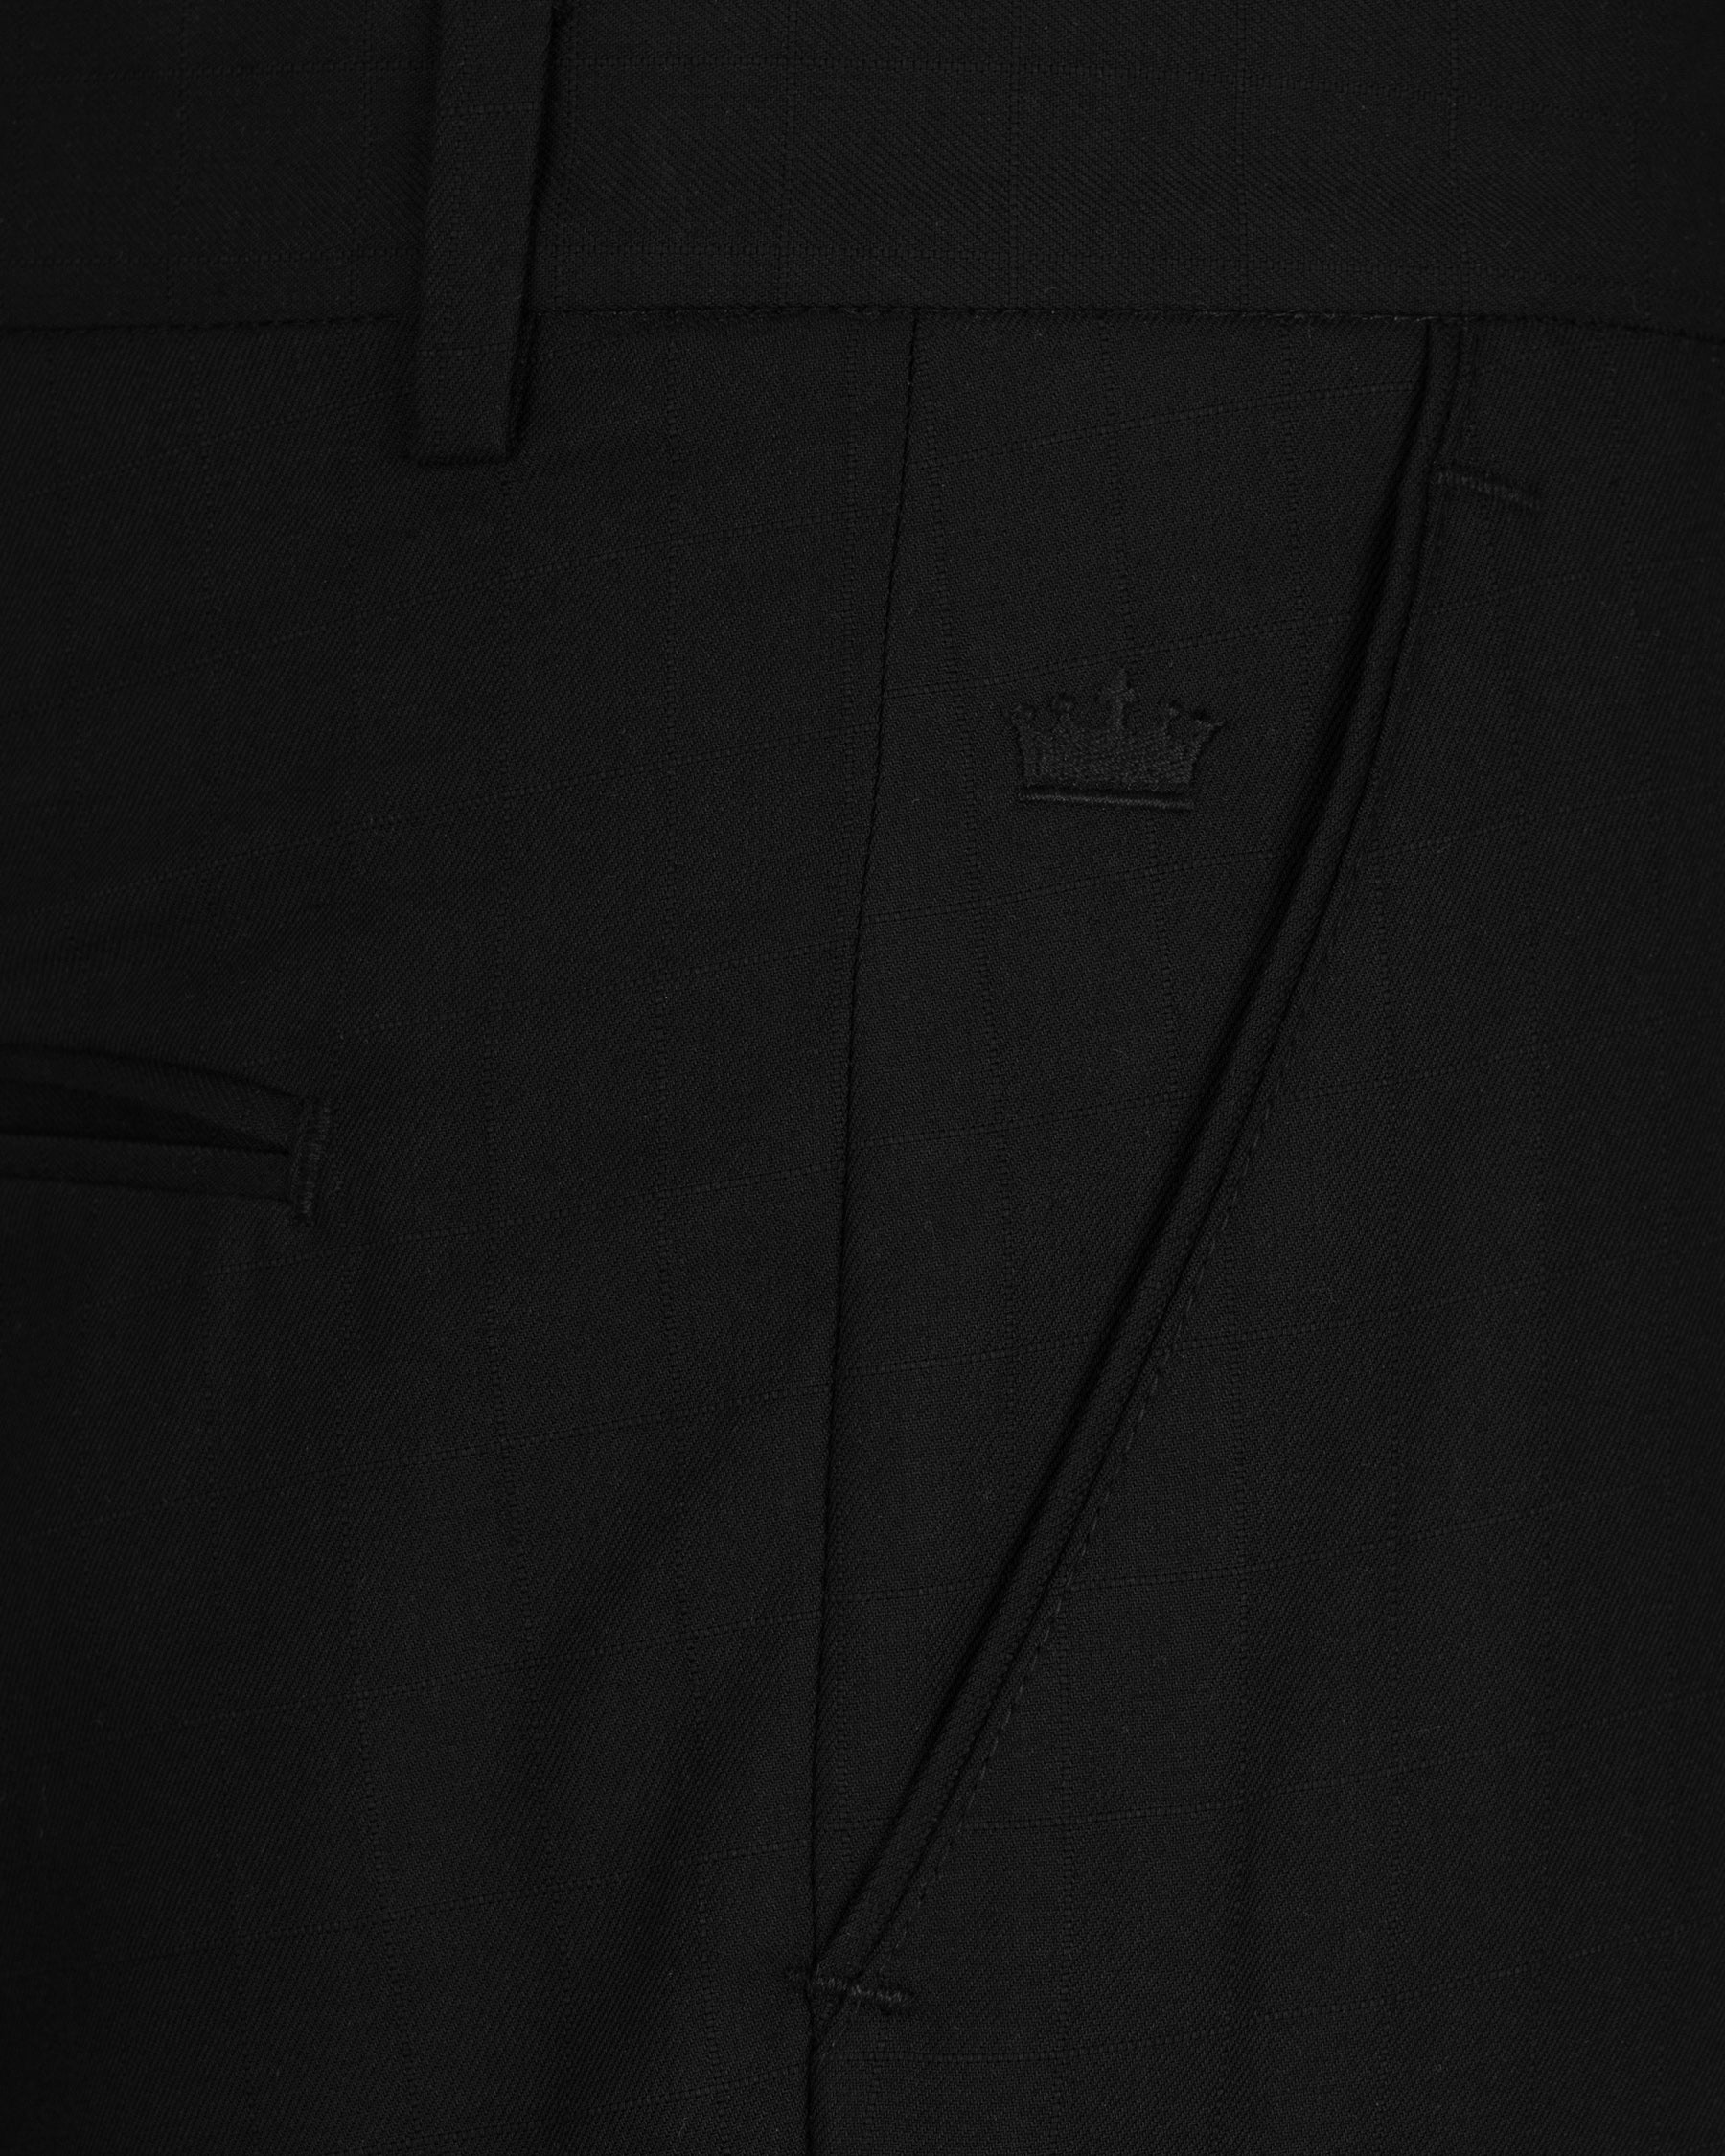 Jade Black Bandhgala Designer Wool Rich Suit ST1552-D16-36, ST1552-D16-38, ST1552-D16-40, ST1552-D16-42, ST1552-D16-44, ST1552-D16-46, ST1552-D16-48, ST1552-D16-50, ST1552-D16-52, ST1552-D16-54, ST1552-D16-56, ST1552-D16-58, ST1552-D16-60